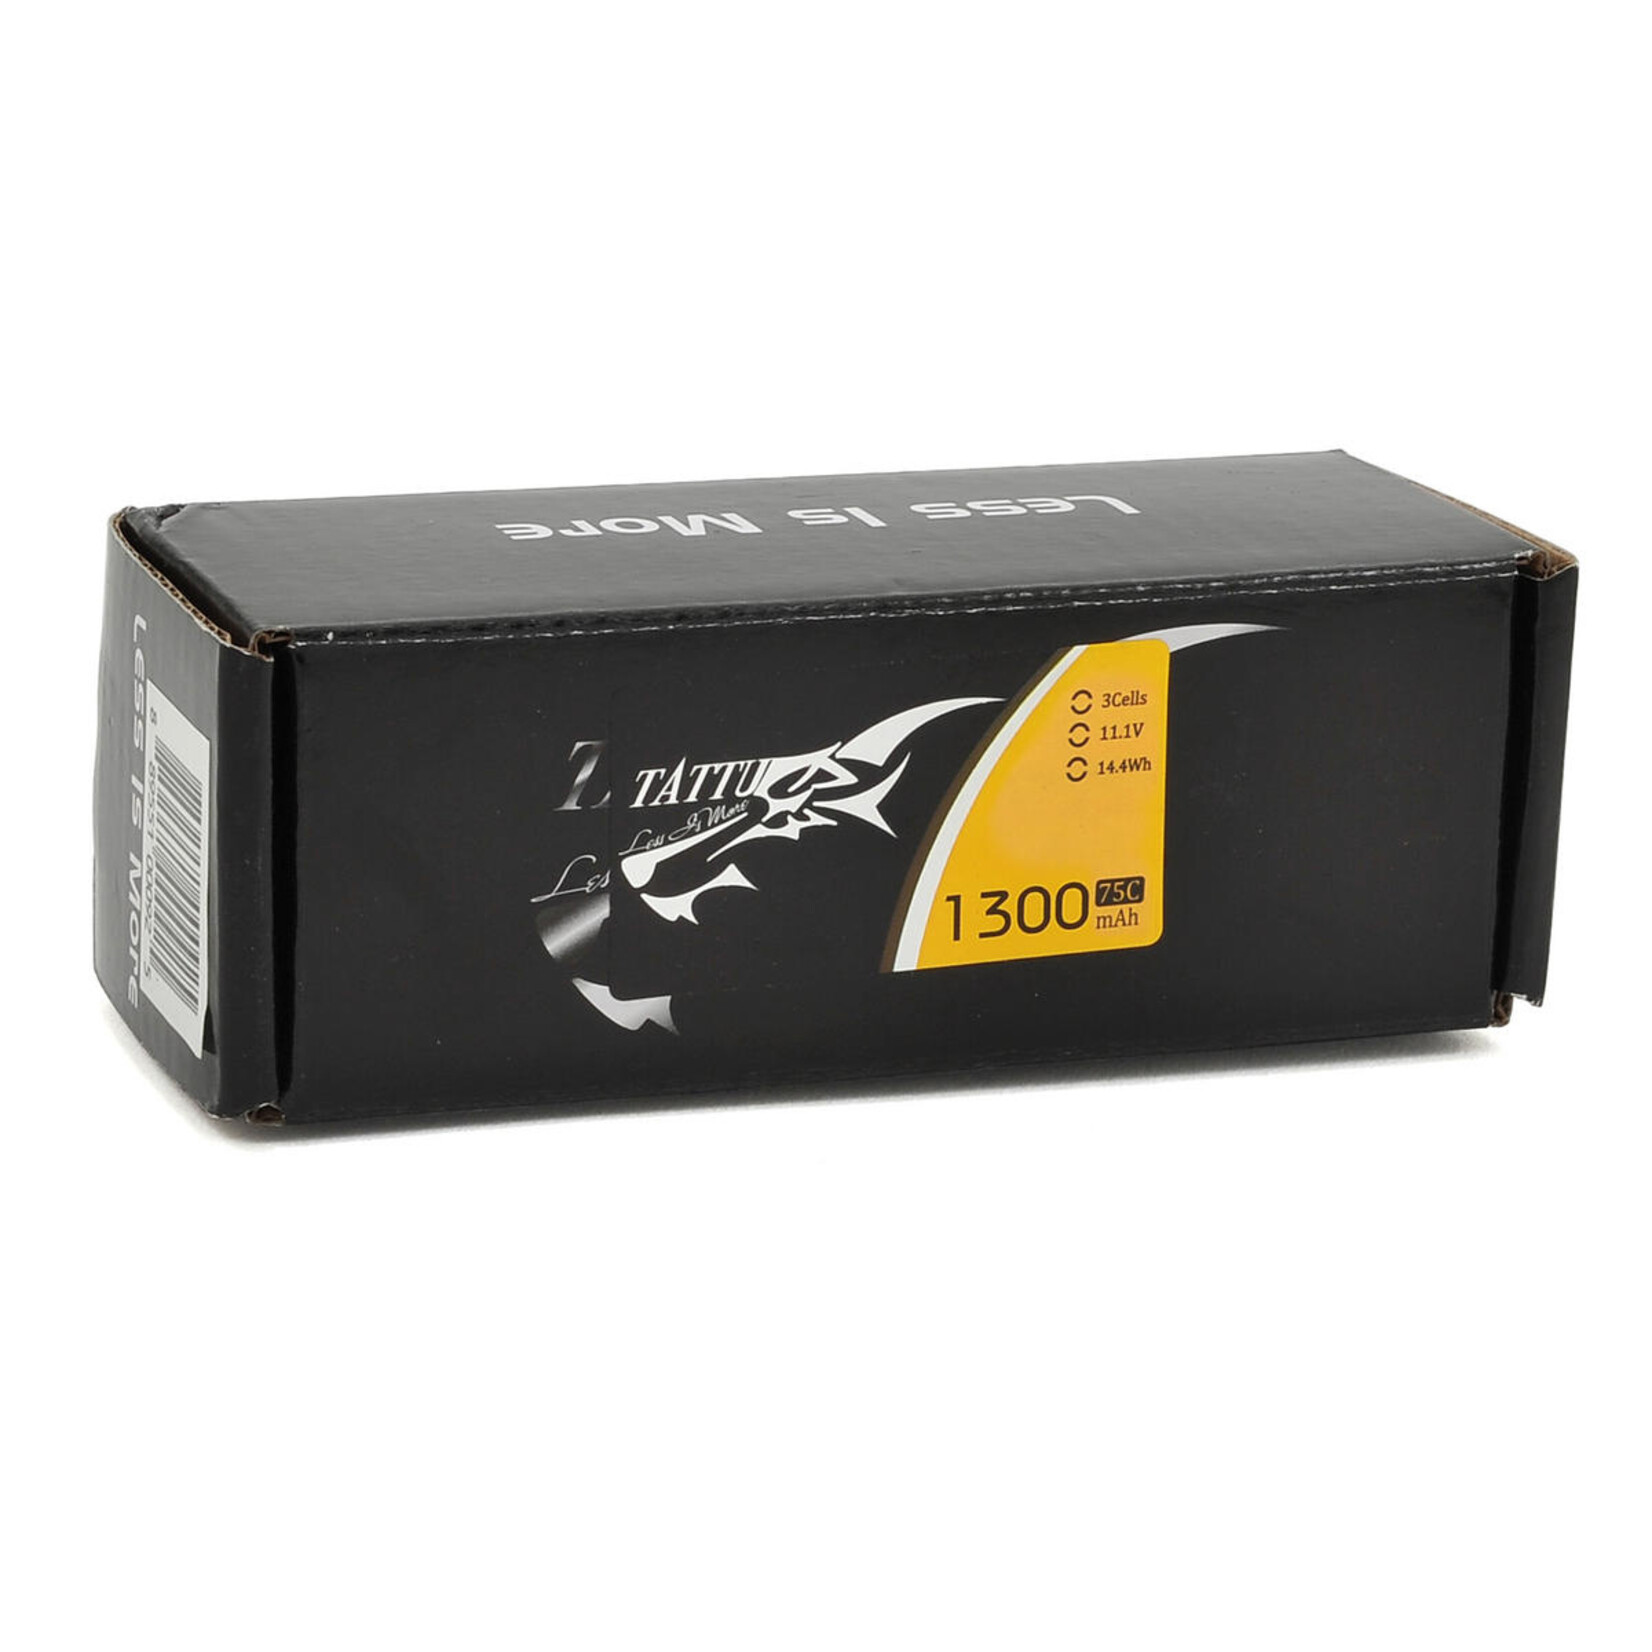 Tattu Tattu 3S LiPo Battery 75C (11.1V/1300mAh) w/XT60 Connector #TA-75C-1300-3S1P-XT60